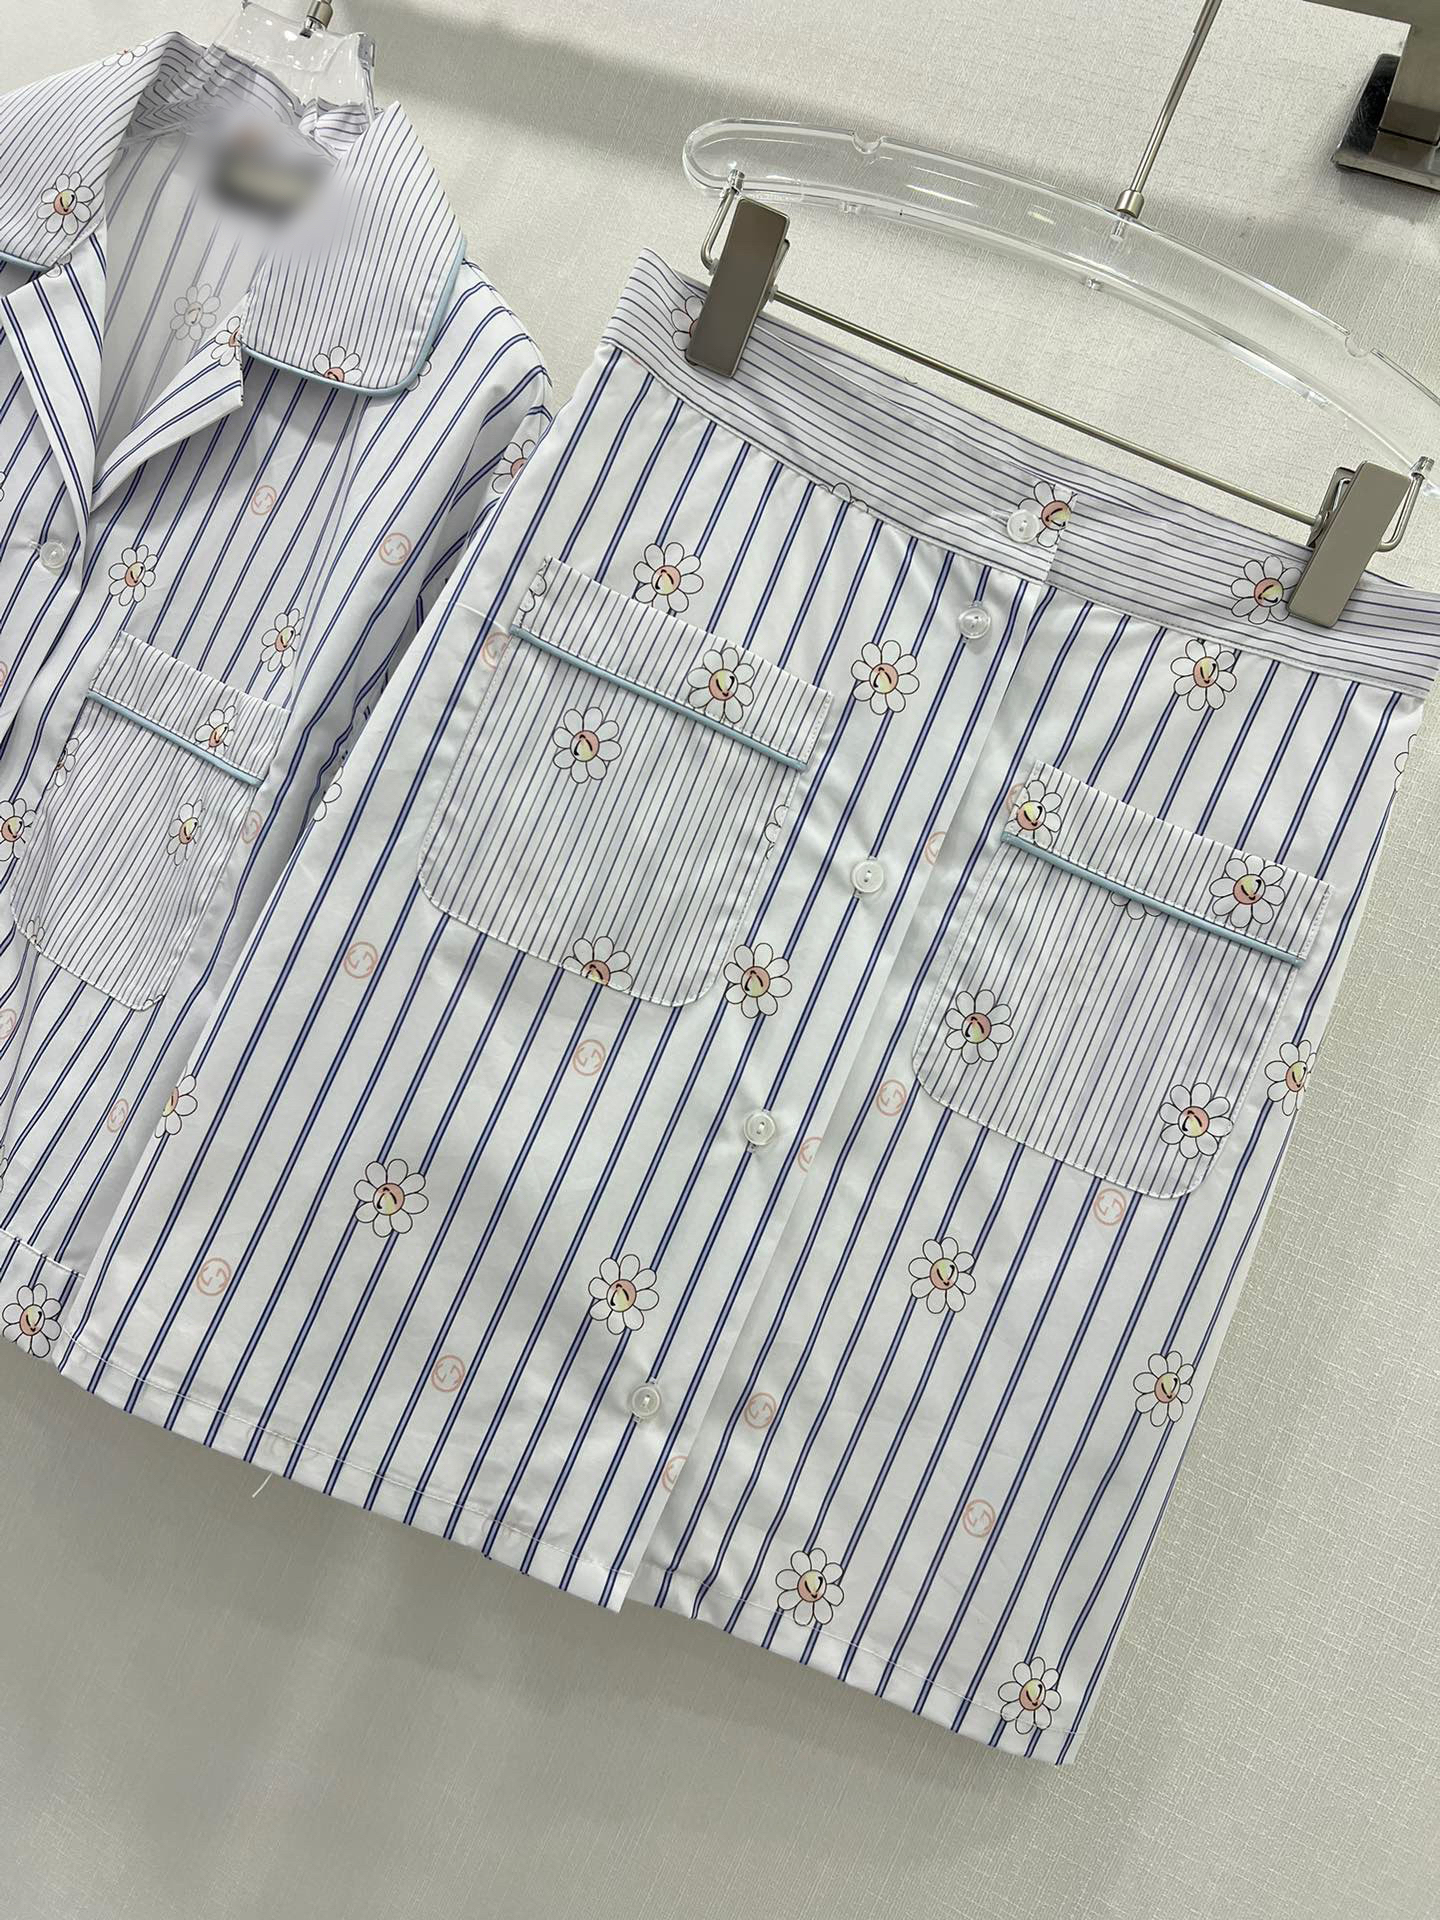 2 pièces Shirt Top + Mini jupe en tricot et blanc de luxe MINE MINI MINI ROGHE ROSE HOT ROSE POUR FILLES COURTES COURT